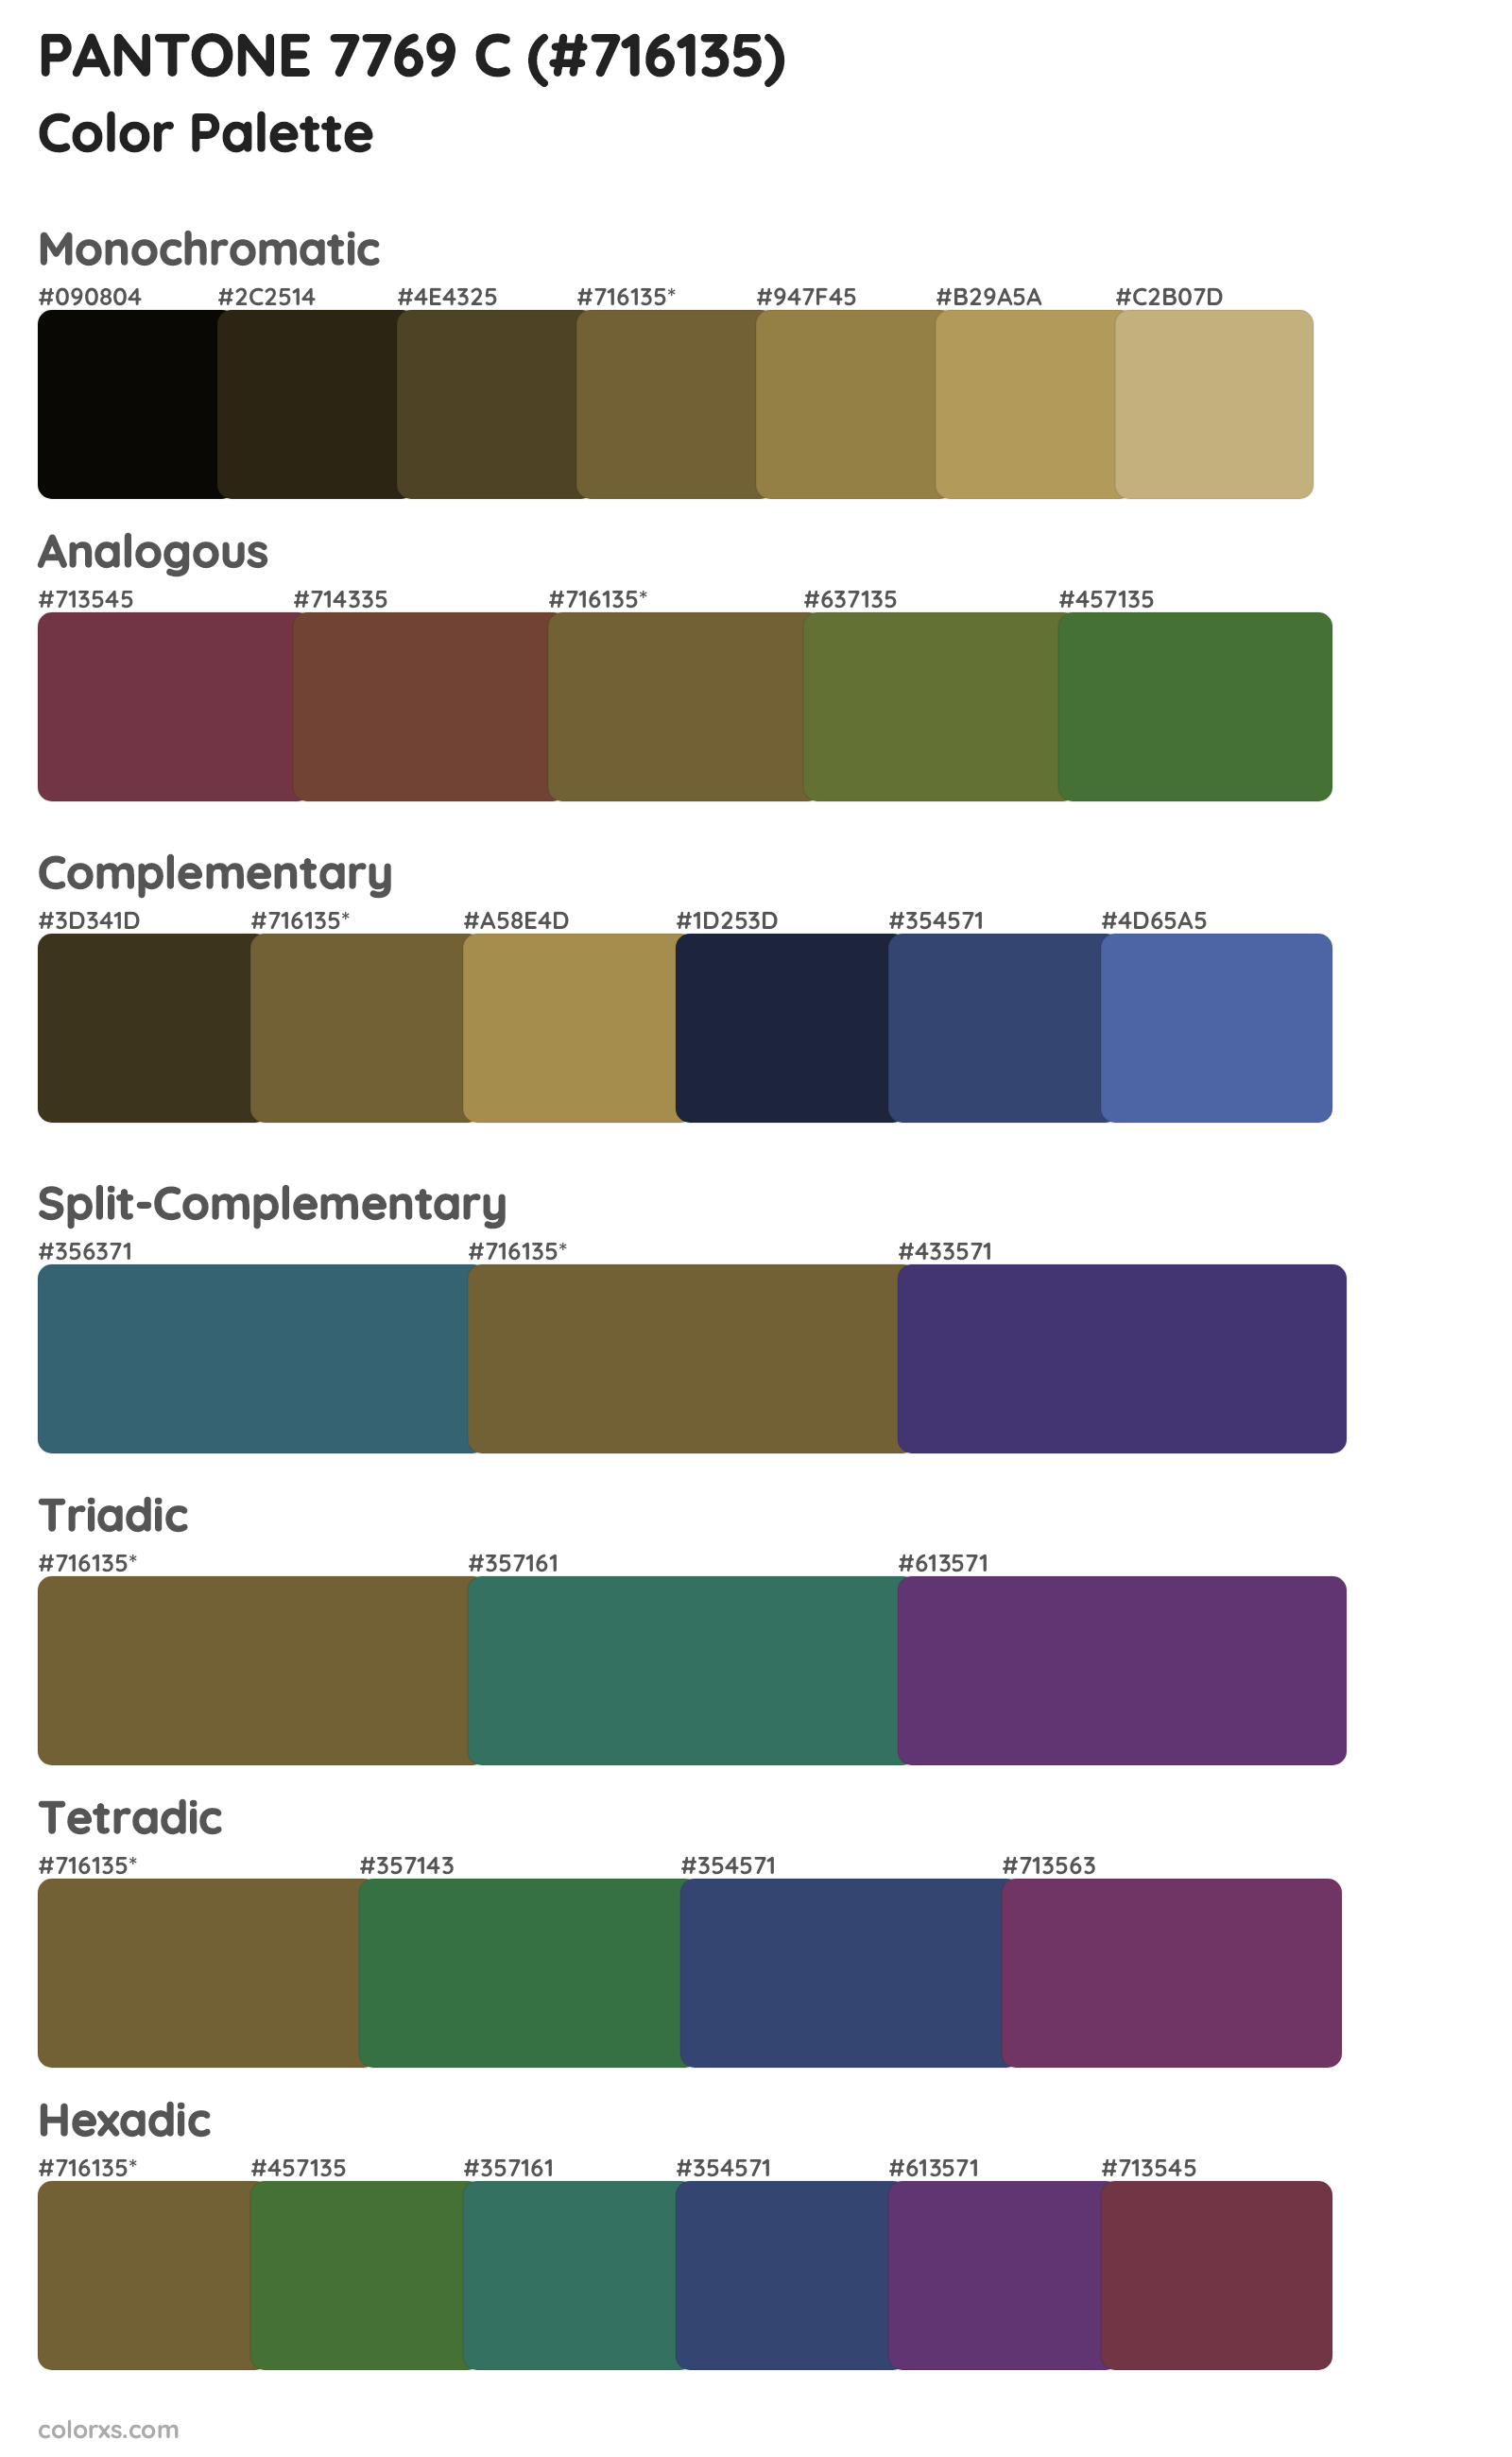 PANTONE 7769 C Color Scheme Palettes